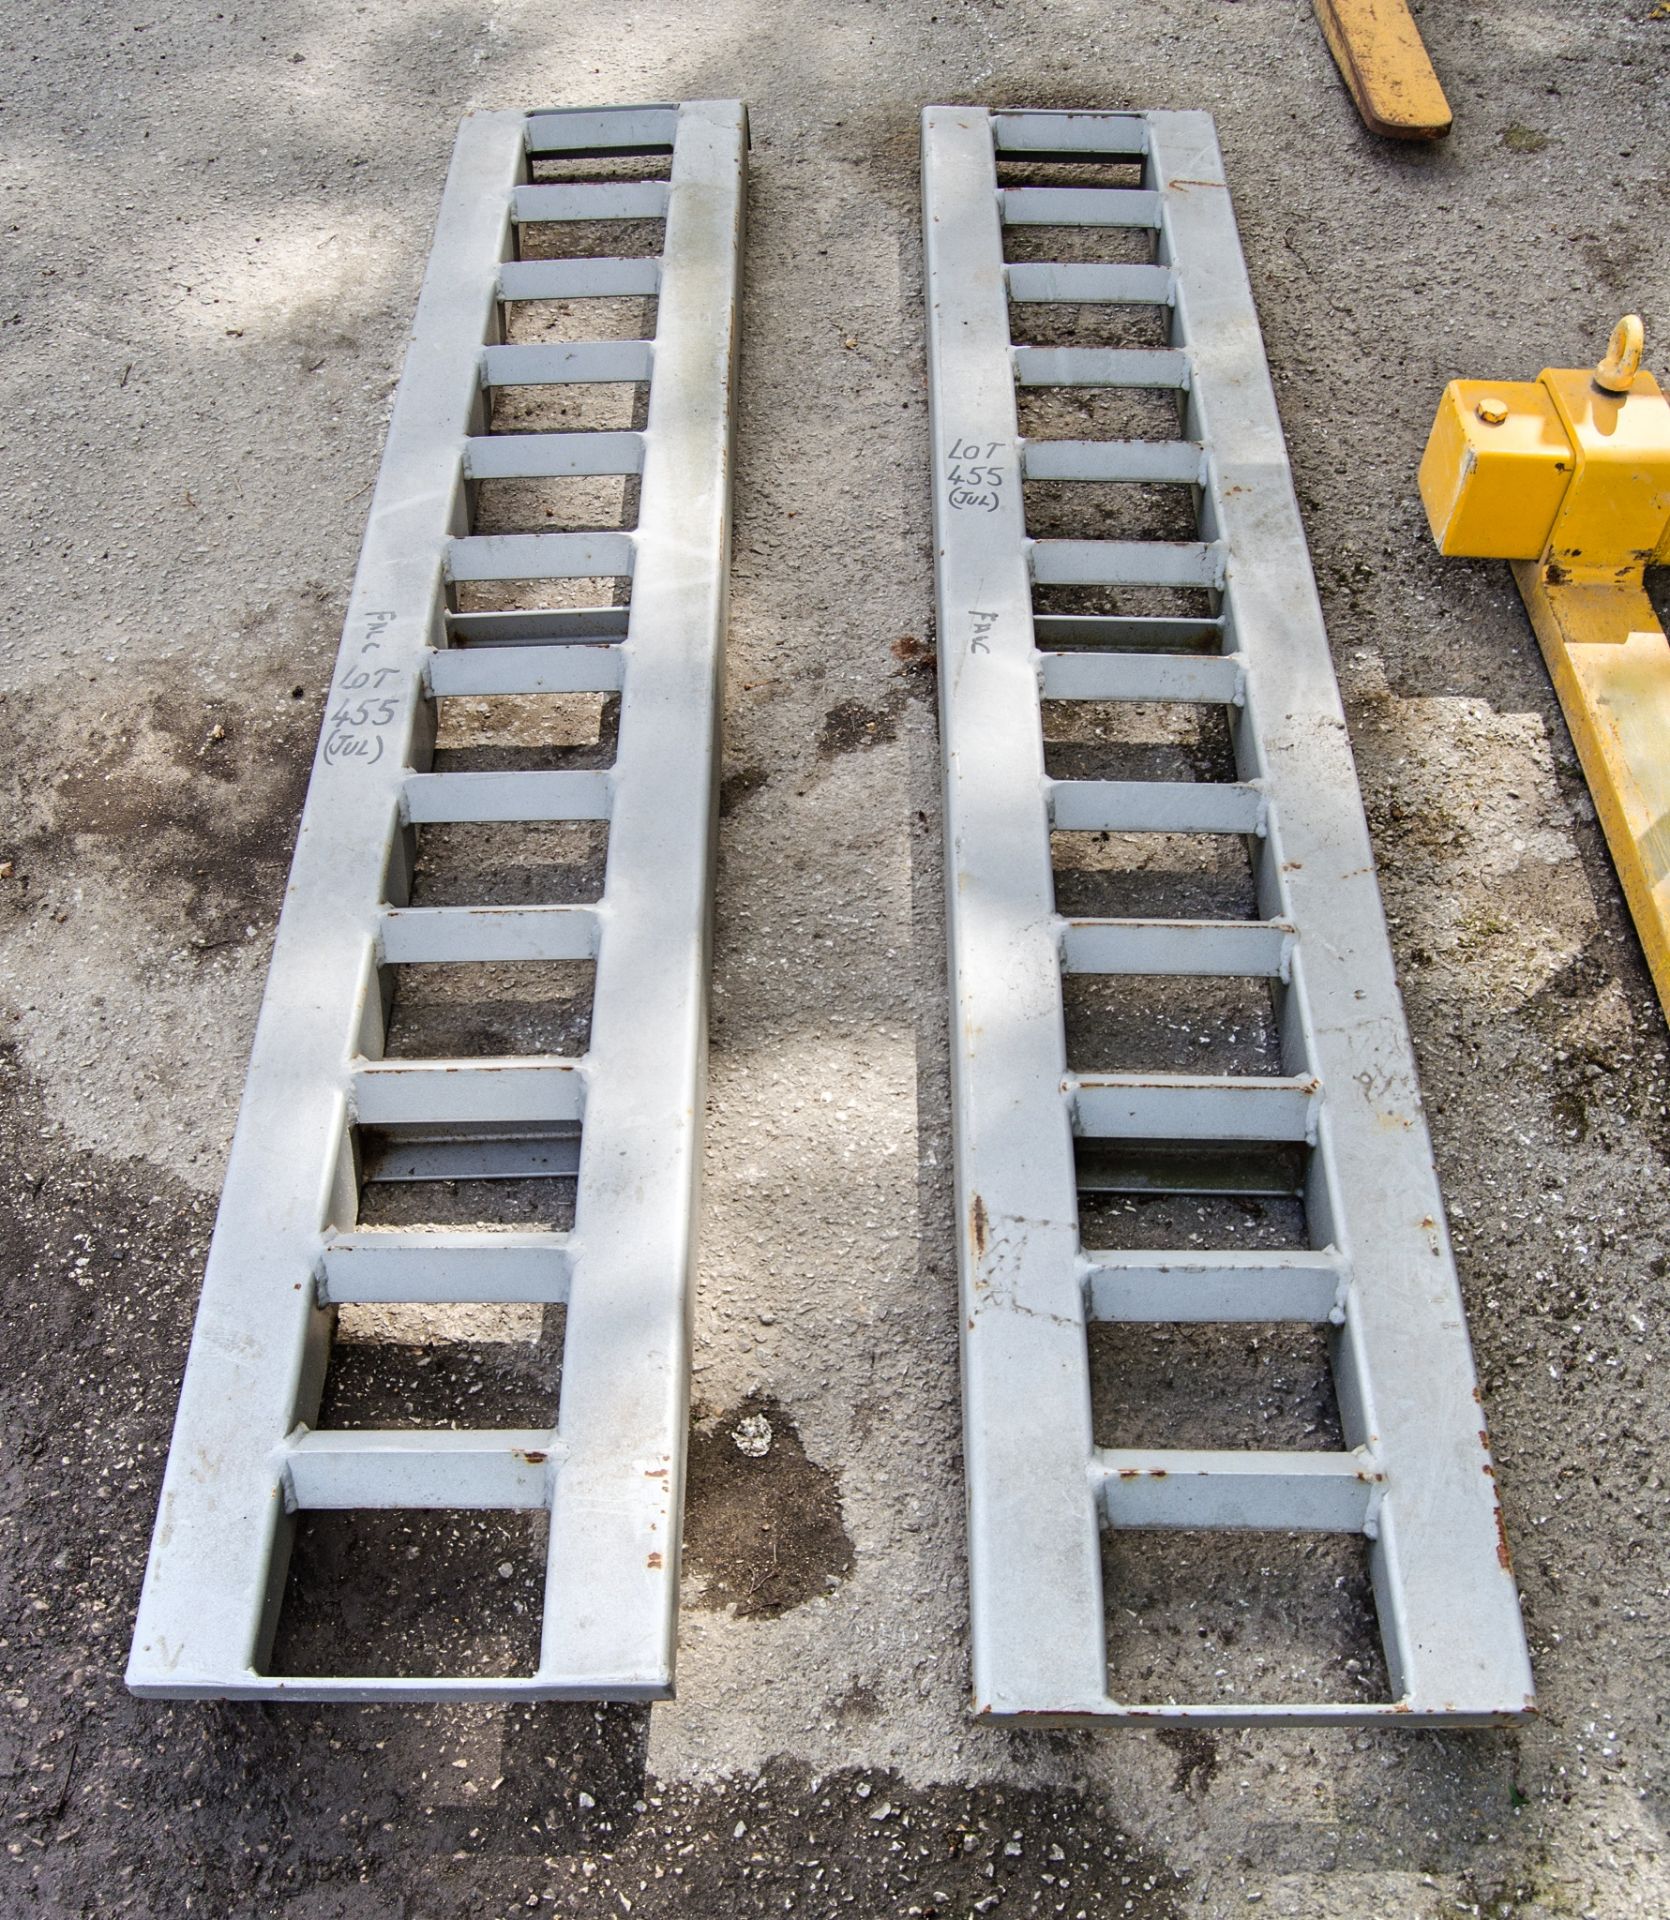 Pair of 6 ft steel ramps